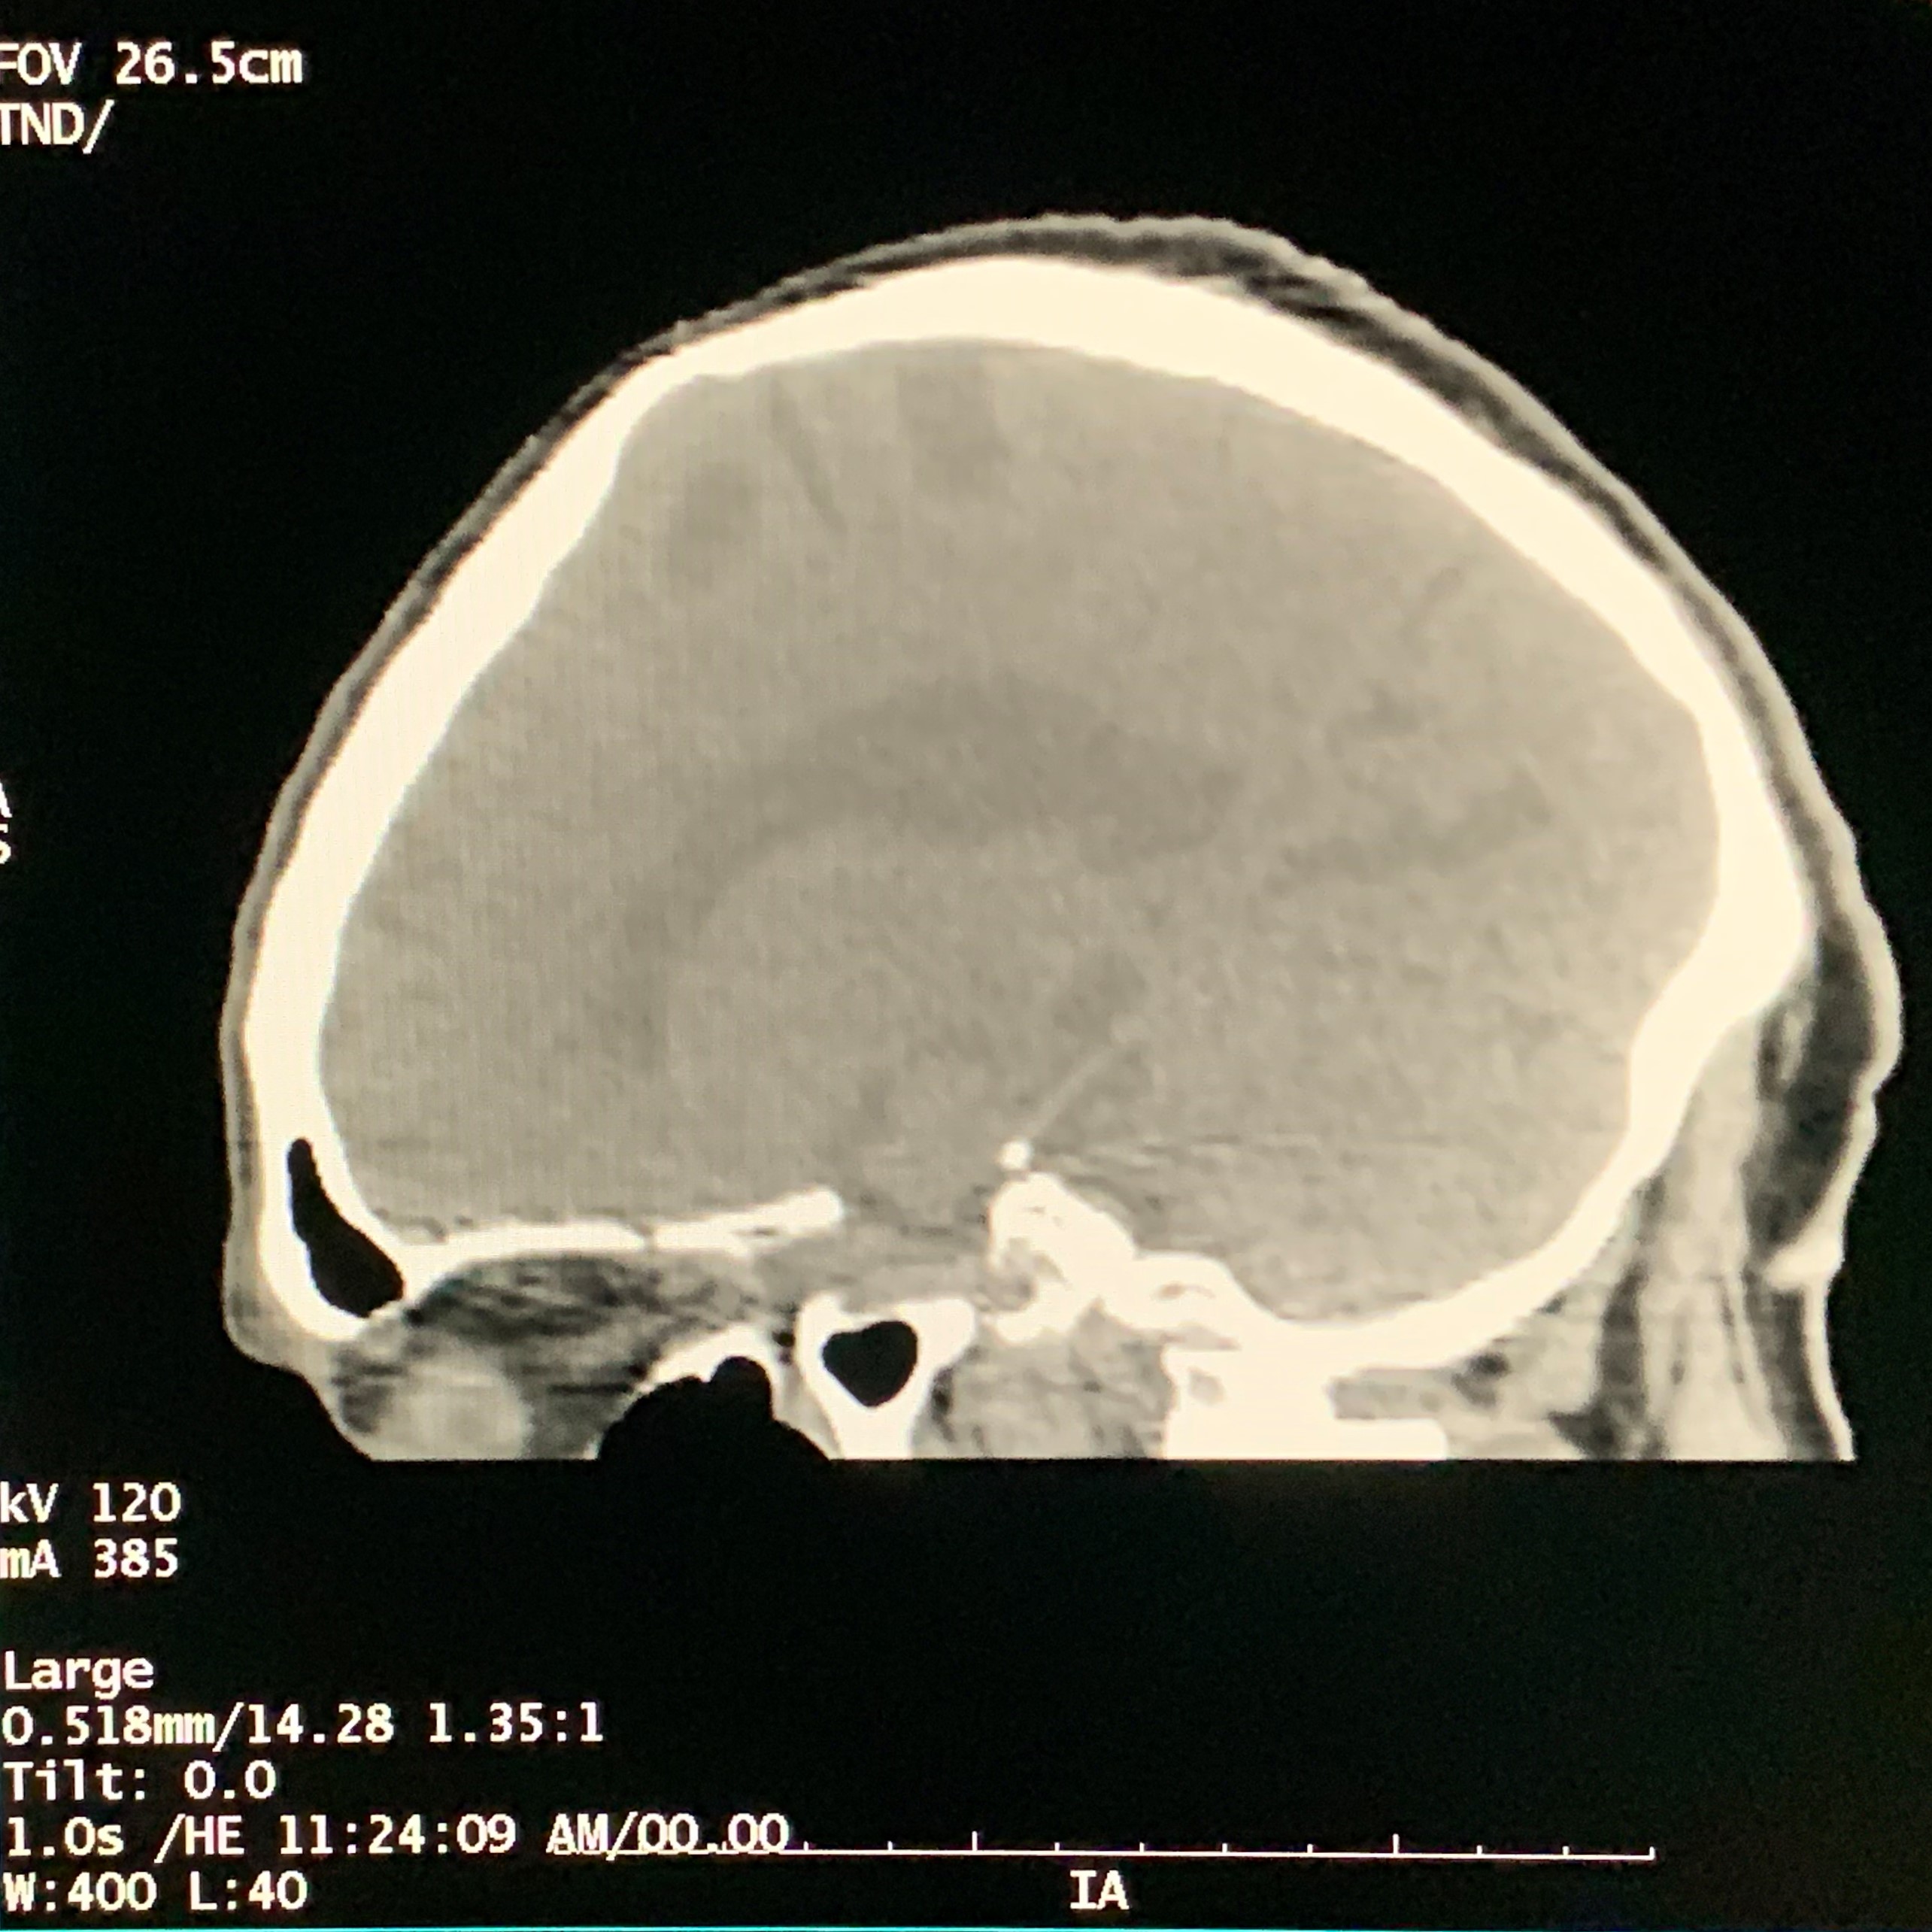 ct vs mri scan brain ct scan sagittal view